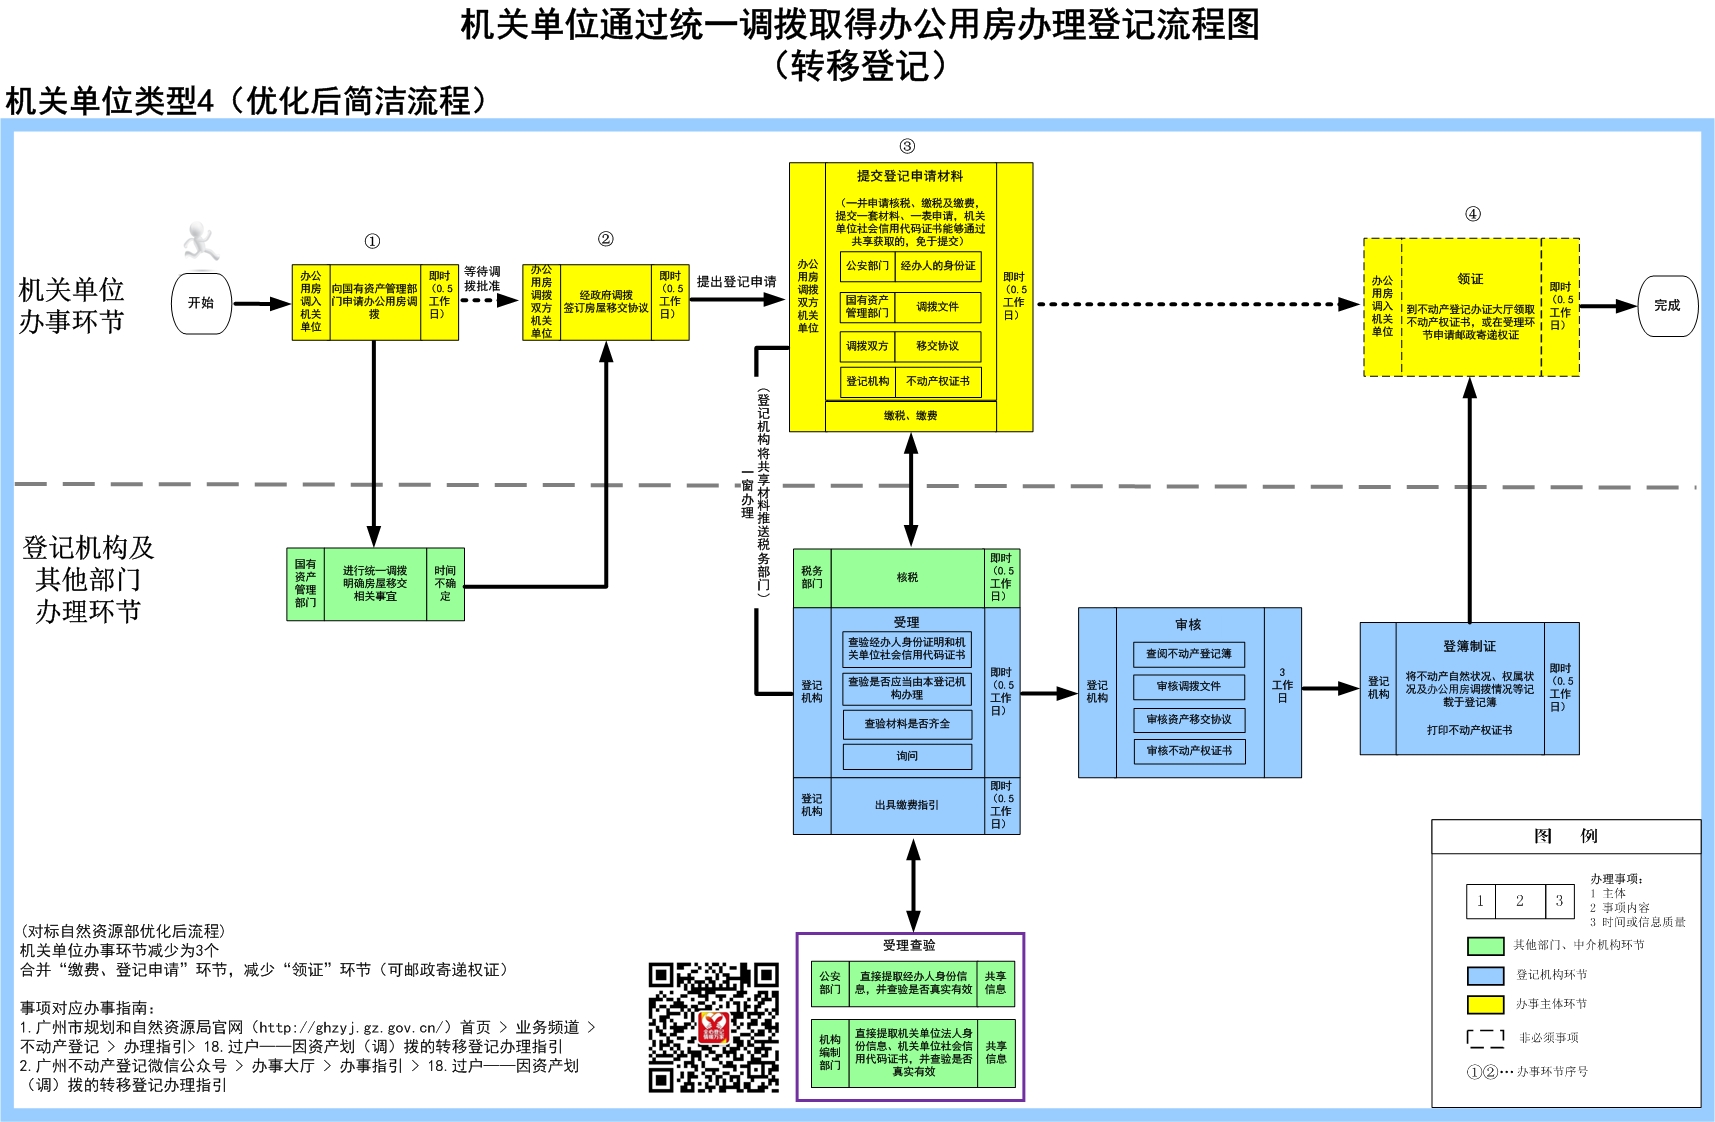 4广州市机关单位通过政府统一调拨取得办公用房办理登记流程（转移登记）.jpg